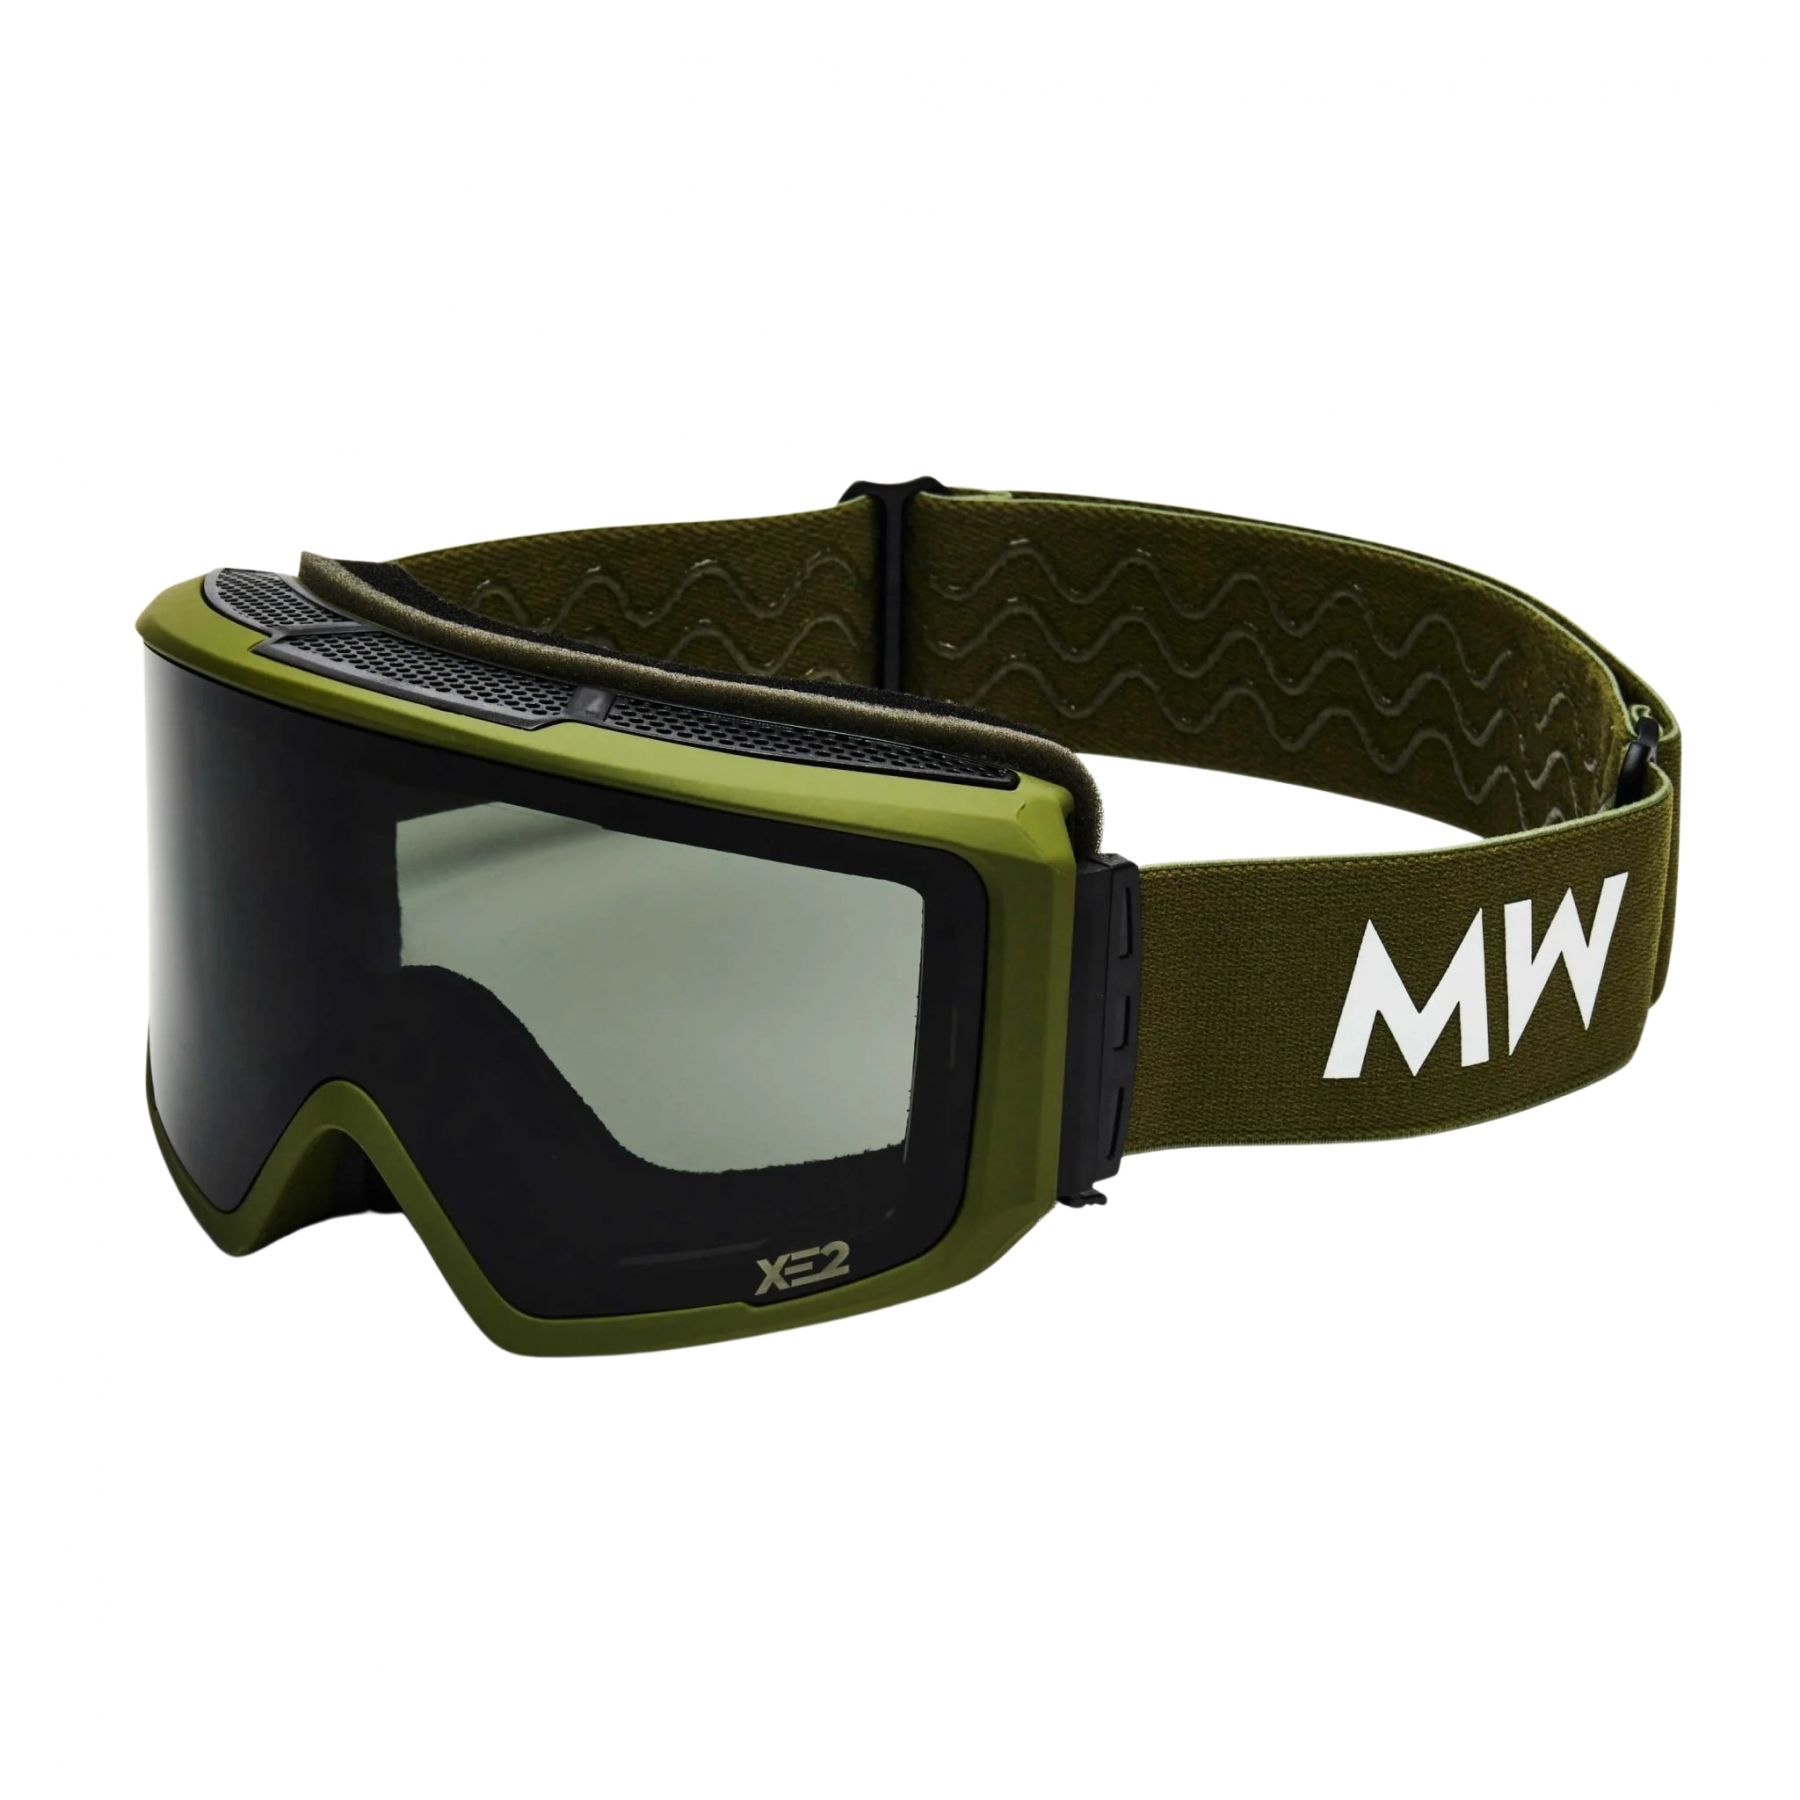 Brug MessyWeekend Flip XE2, skibriller, grøn til en forbedret oplevelse